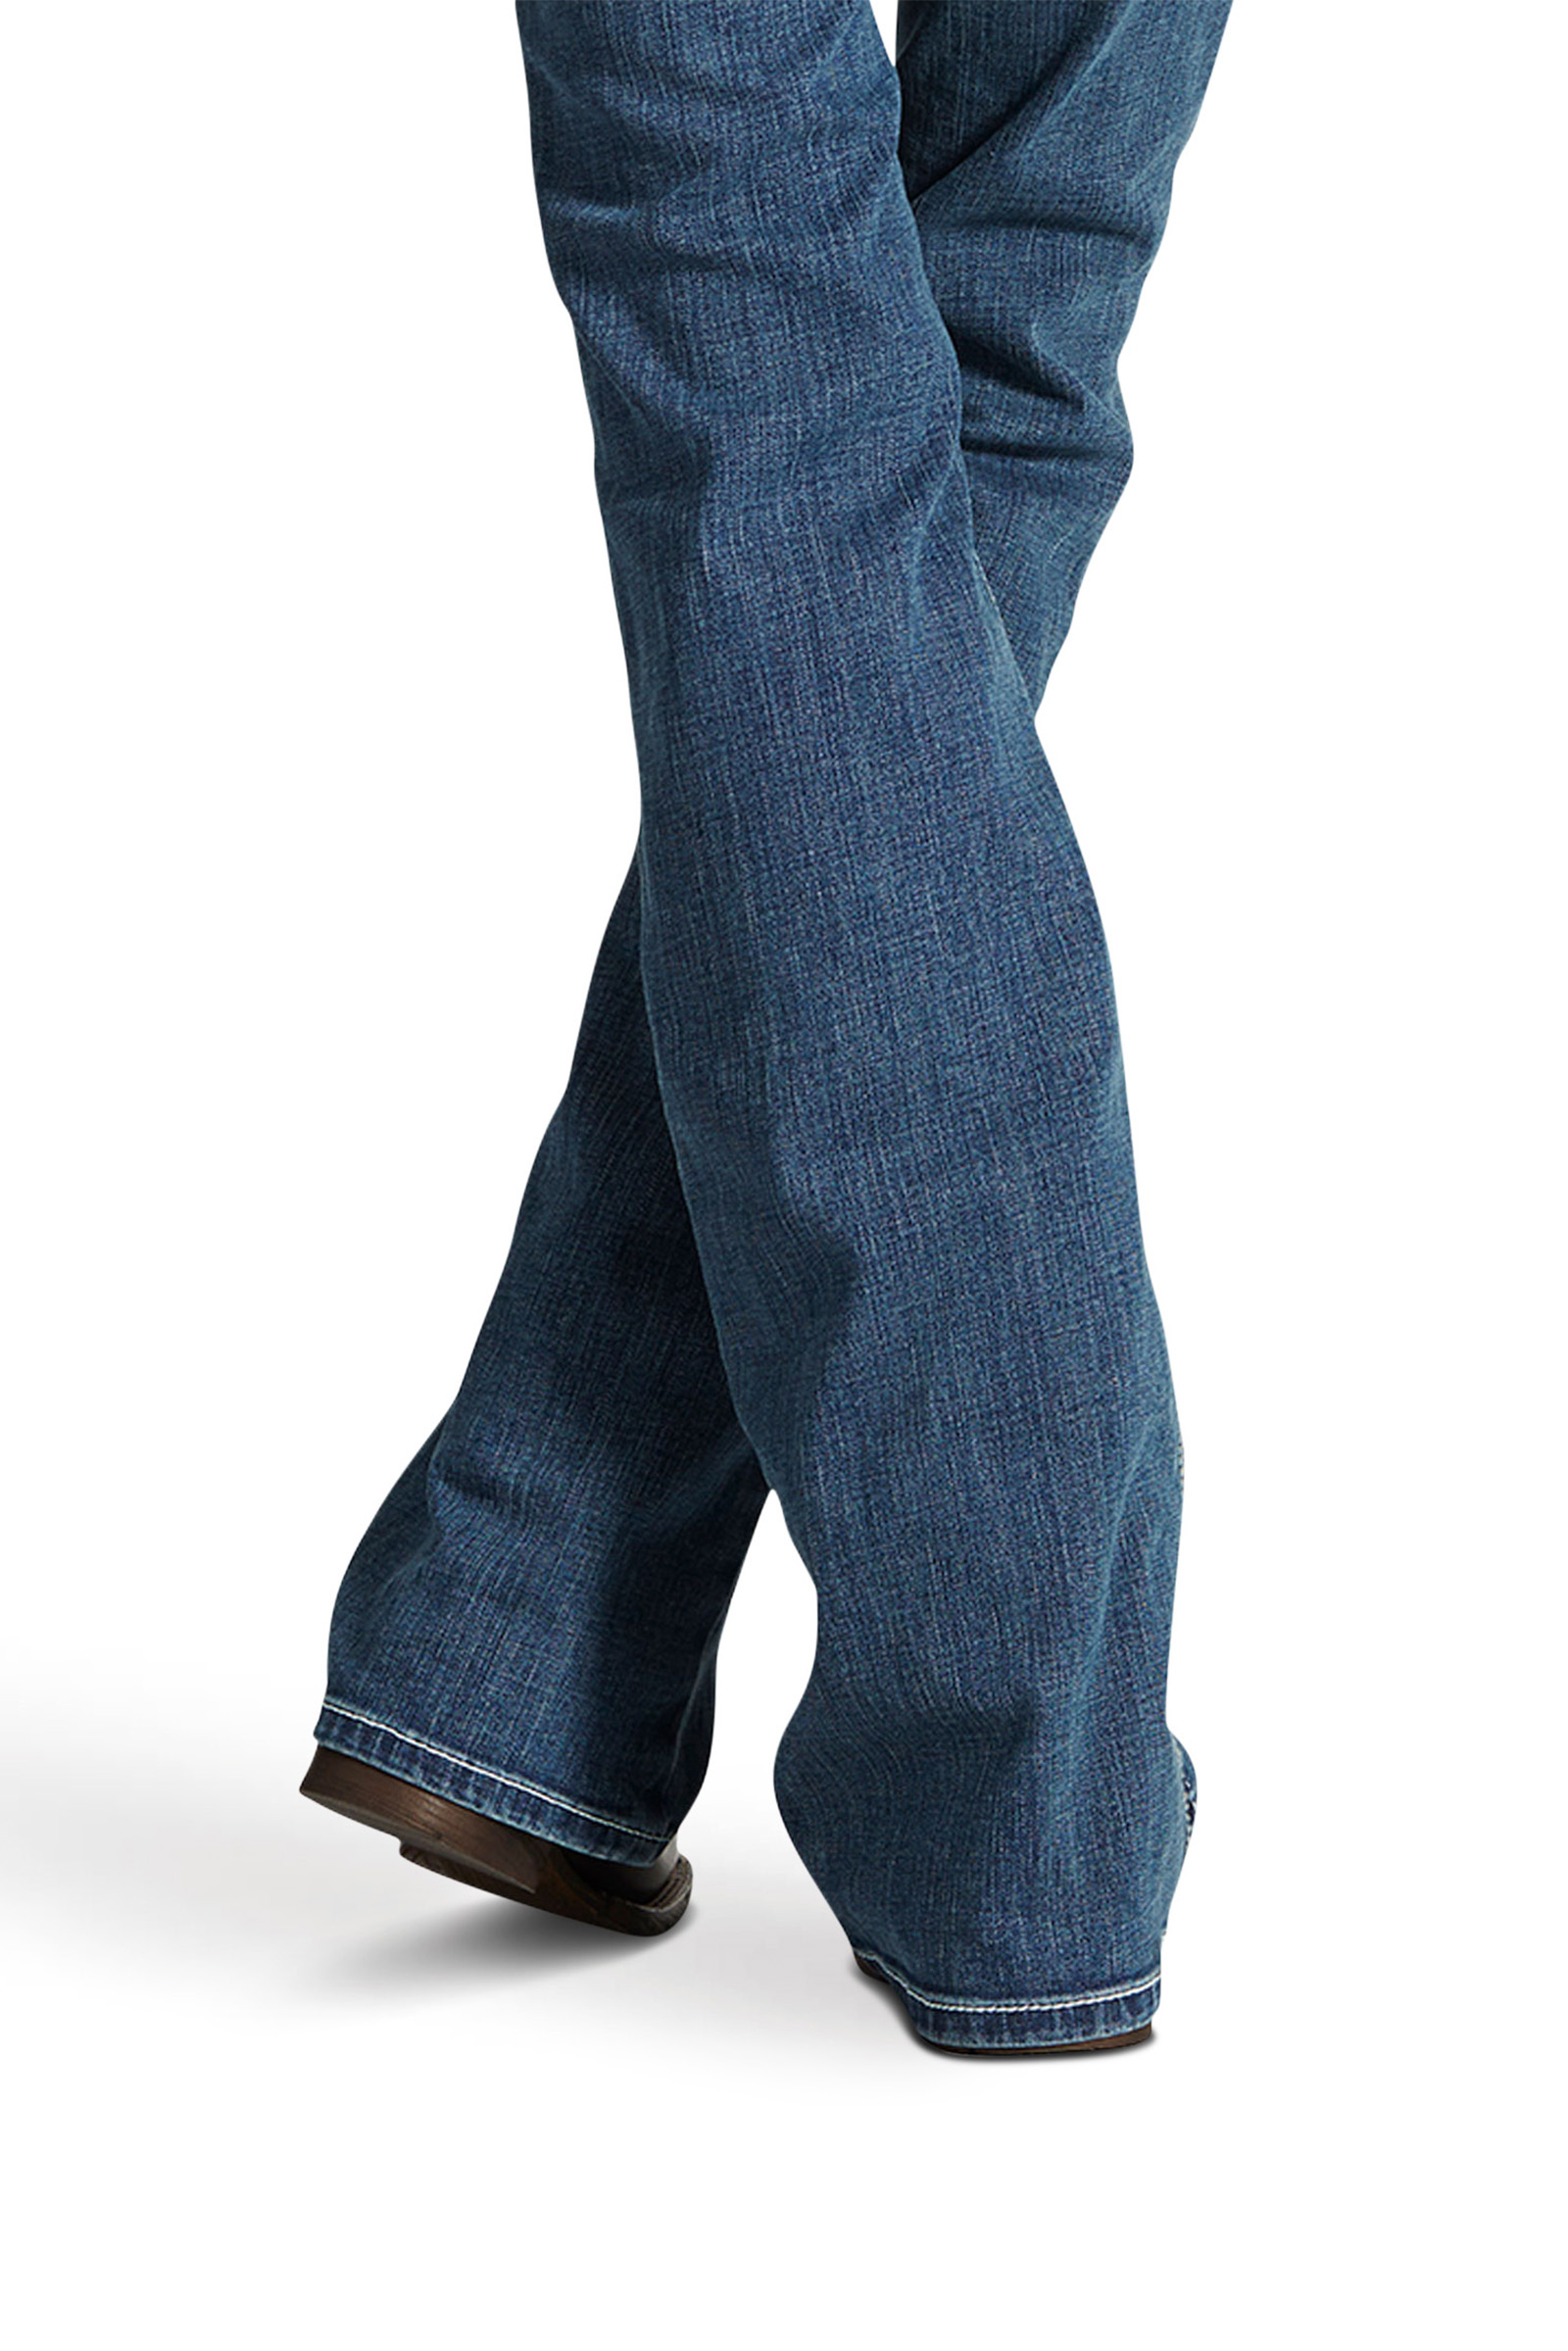 Ariat Women's R.E.A.L. Mid Rise Stretch Whipstitch Boot Cut Jeans